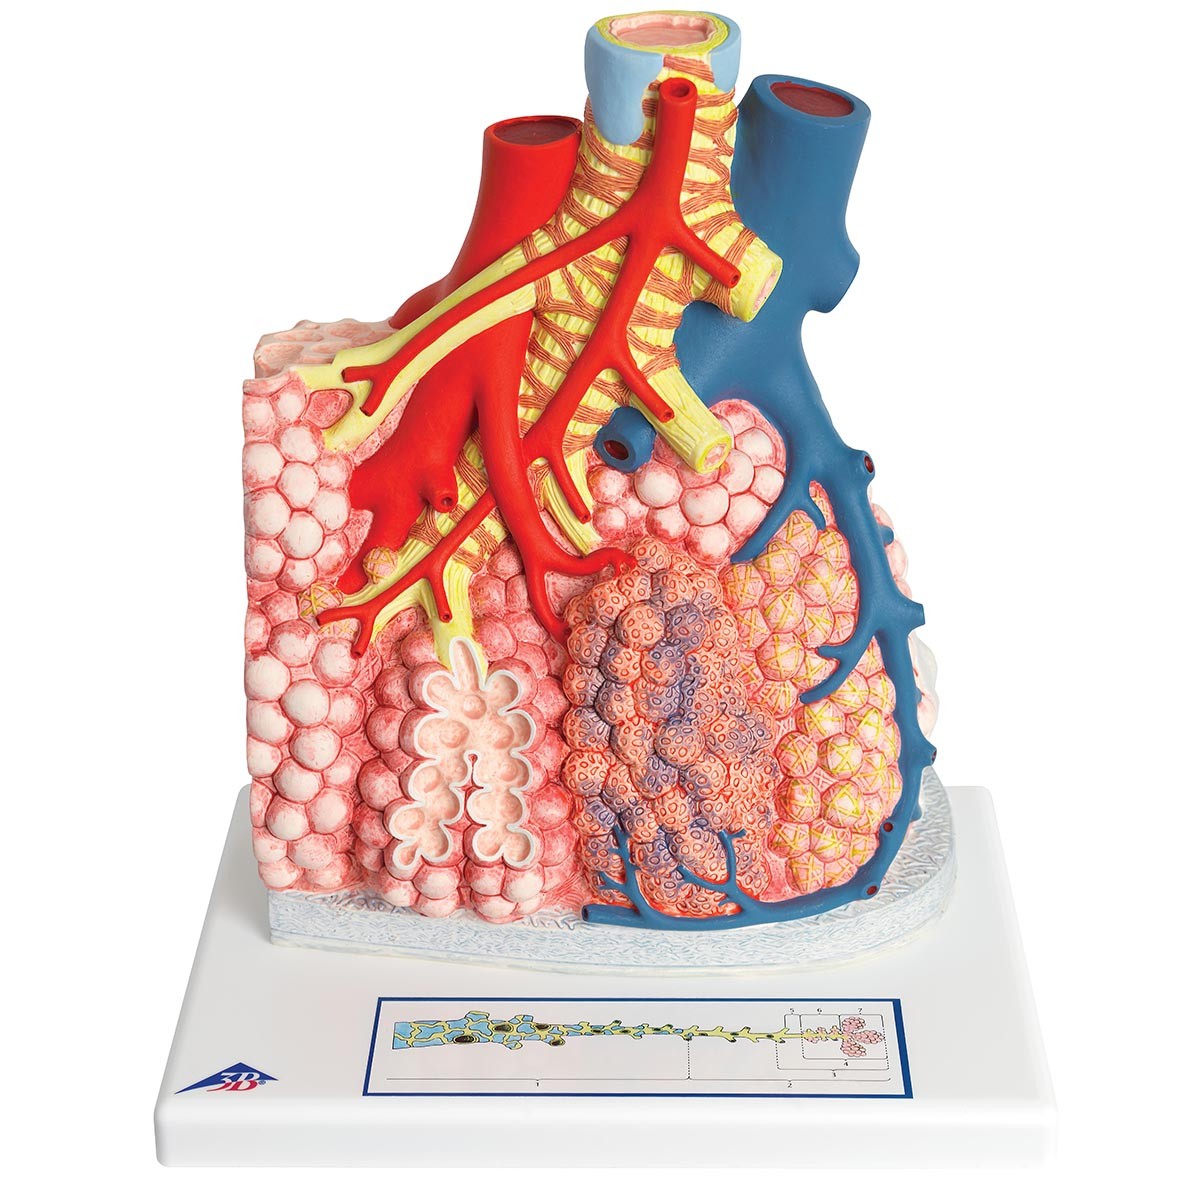 Lungenläppchen mit umgebenden Blutgefäßen